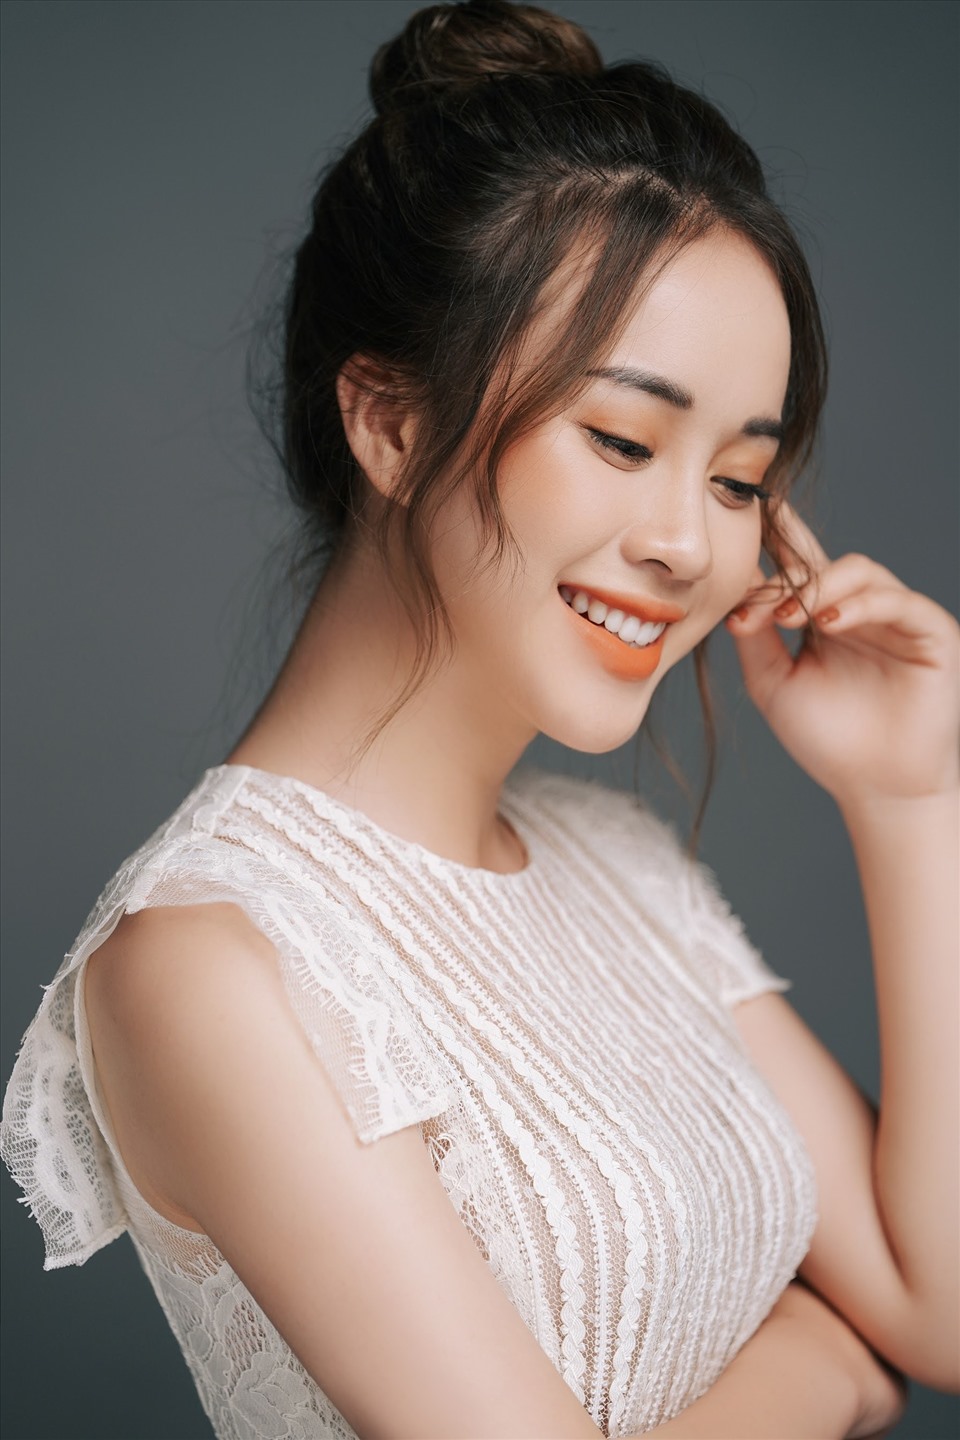 Cùng đón xem những khoảnh khắc đầy năng lượng và sắc đẹp của các thí sinh Hoa hậu Việt Nam 2020 trên ảnh.